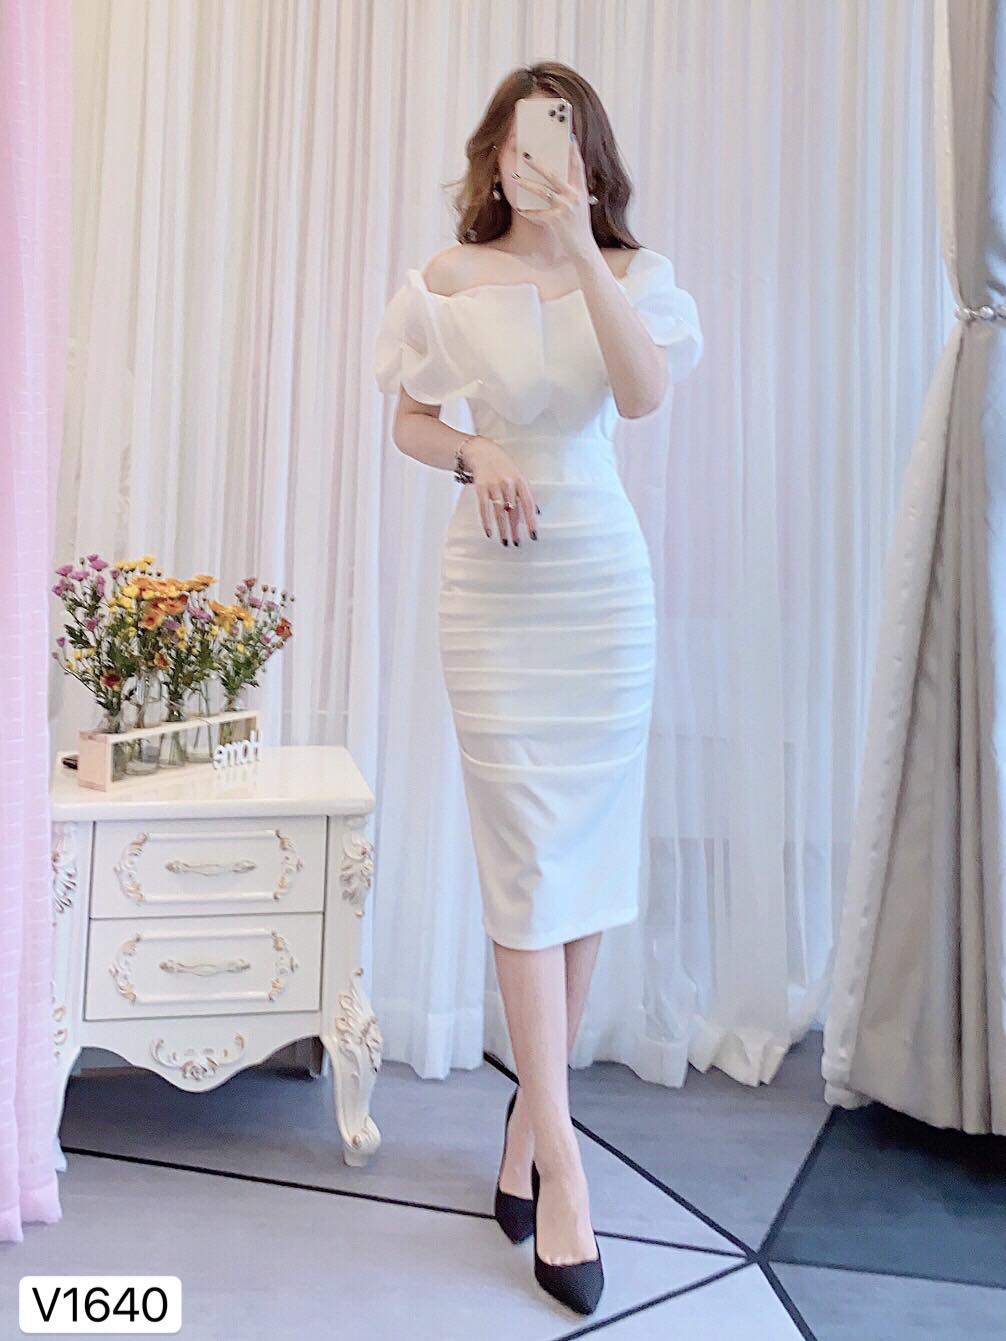 Top 9 shop bán váy đầm đẹp nhất Đà Nẵng - sakurafashion.vn